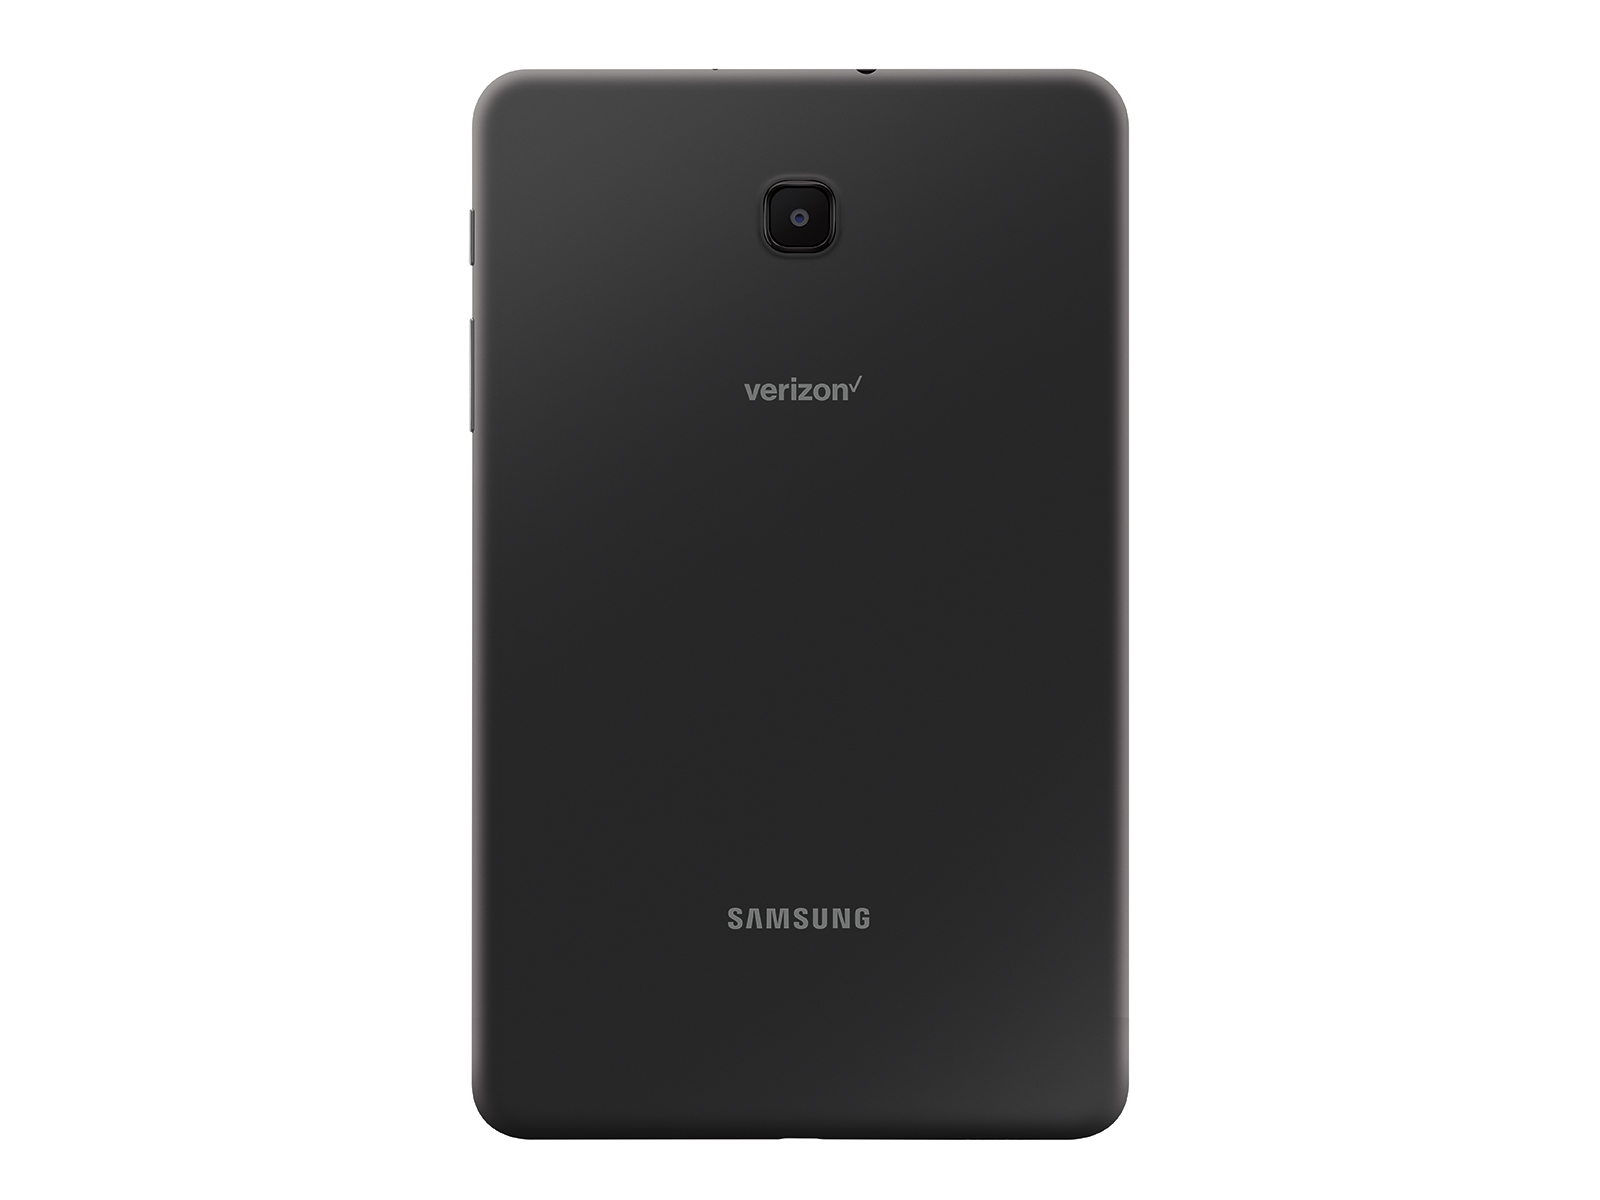 Samsung Galaxy Tab A 8.0 SM-T387V 32GB Black (Verizon